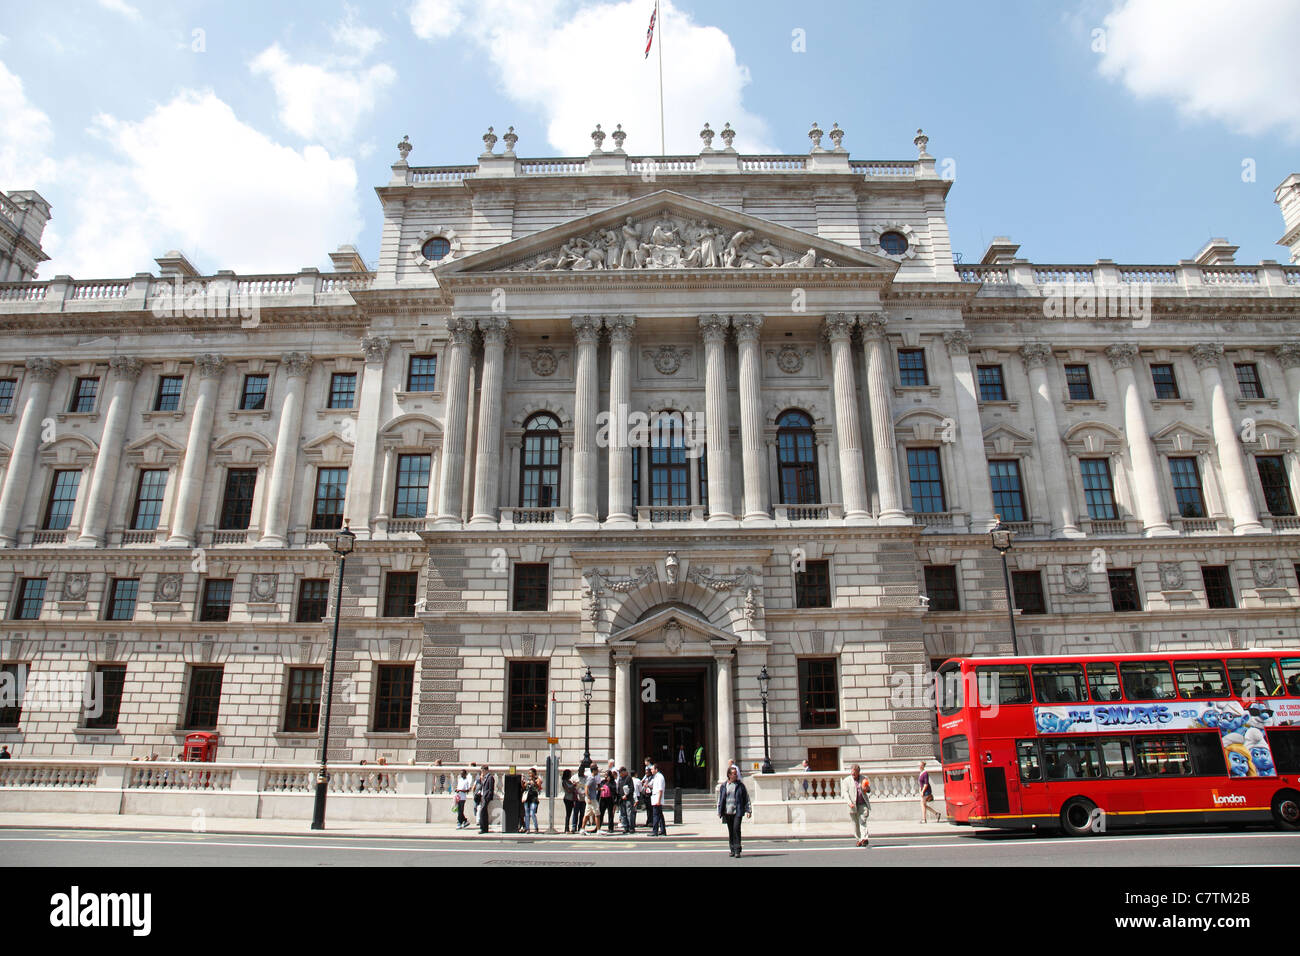 H M trésor, Whitehall, Westminster, Londres, Angleterre, Royaume-Uni Banque D'Images